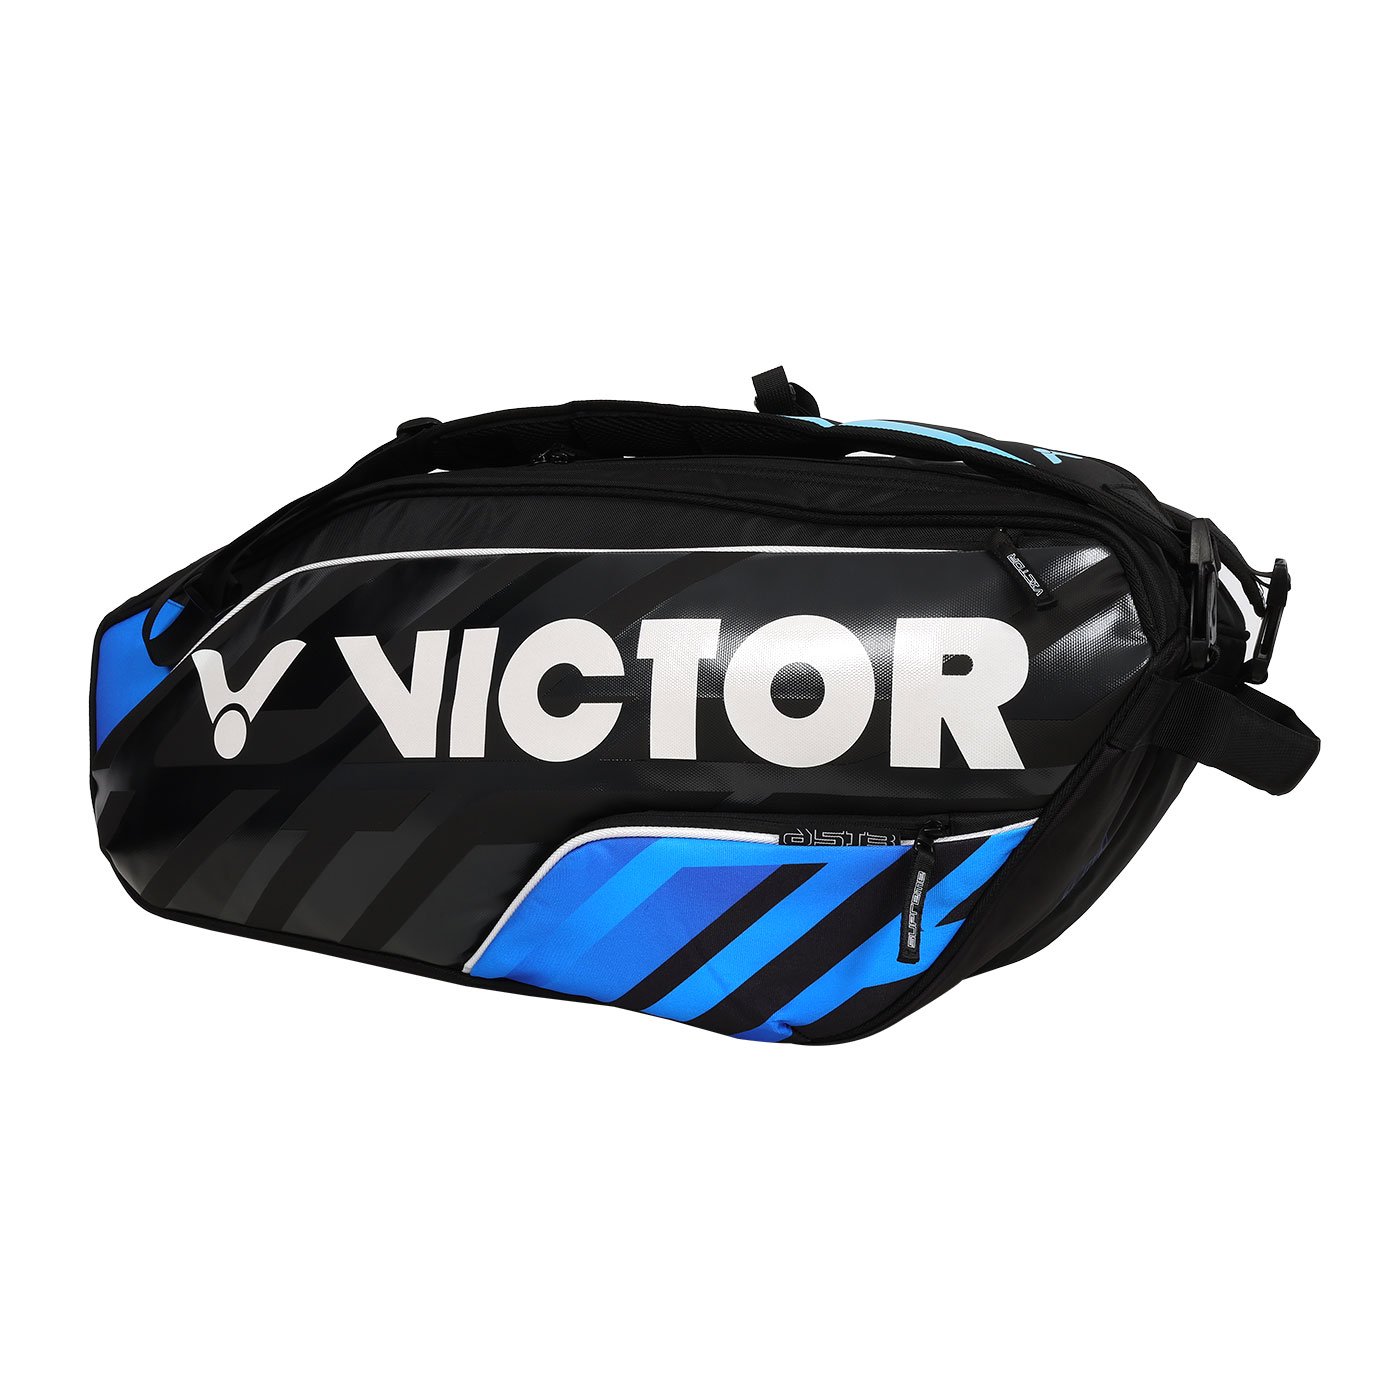 VICTOR 6支裝羽拍包  BR9213CF - 黑銀藍